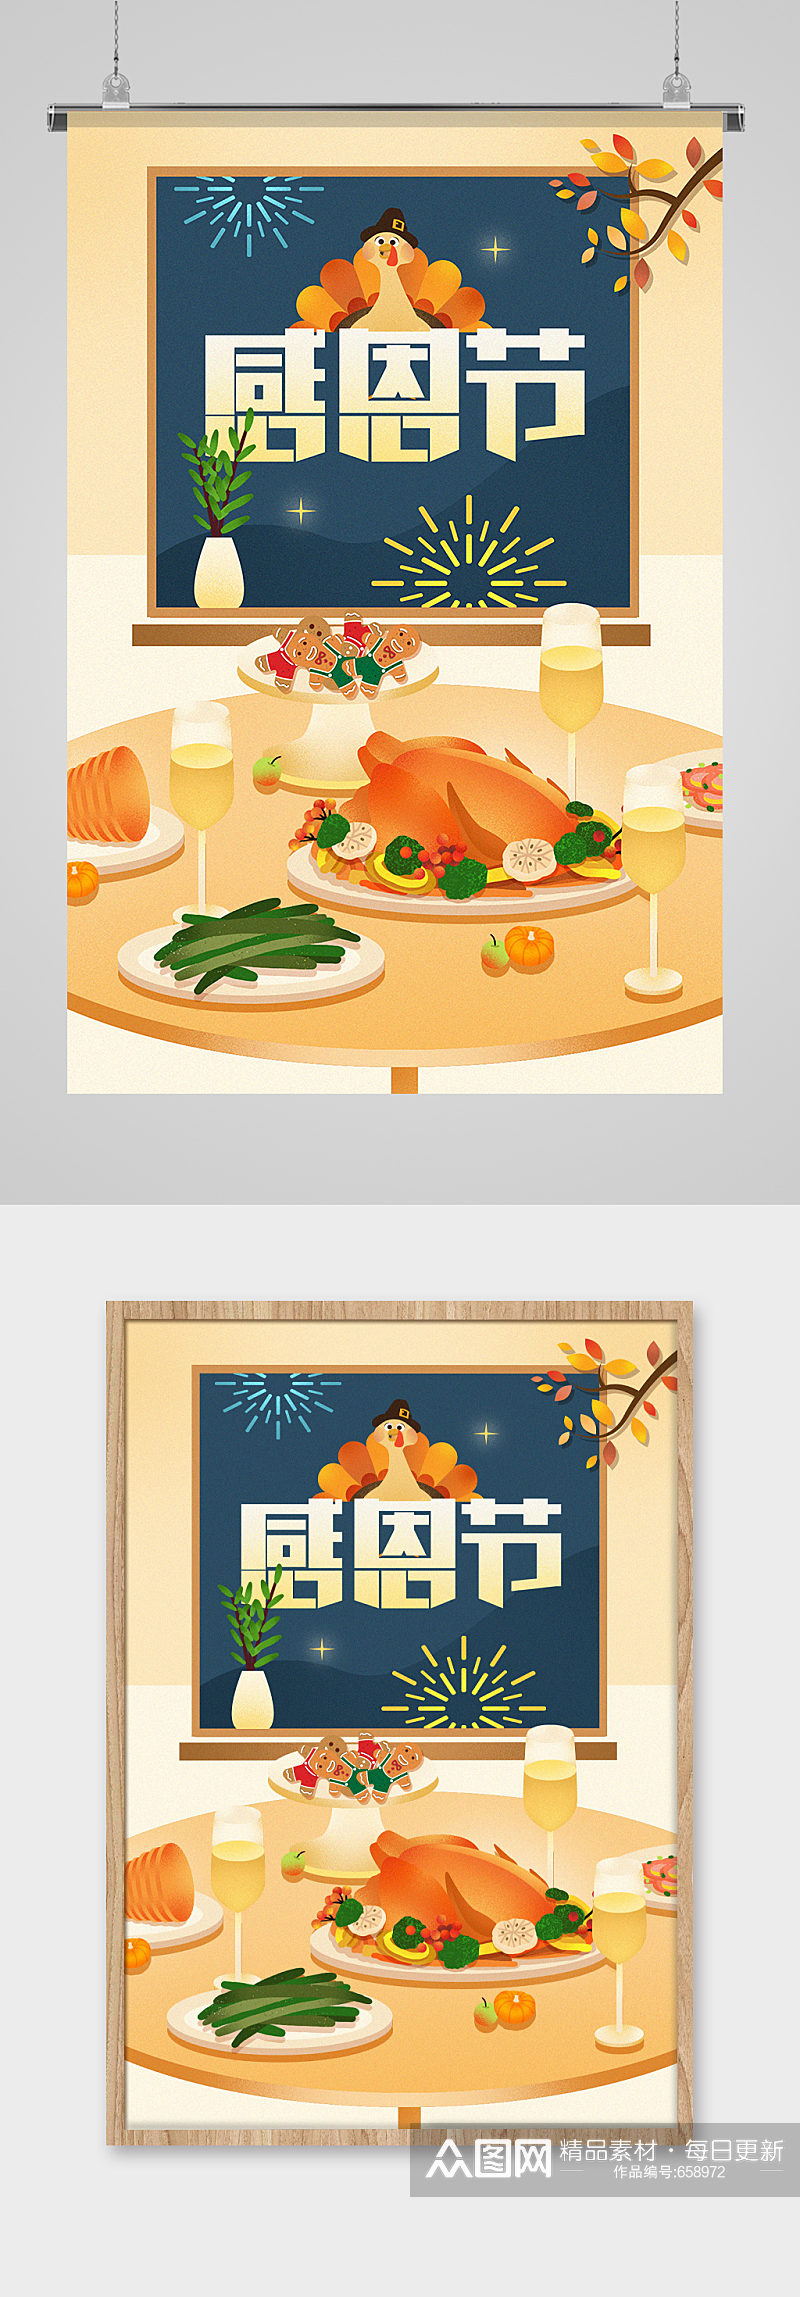 感恩节大餐美食手绘插画素材